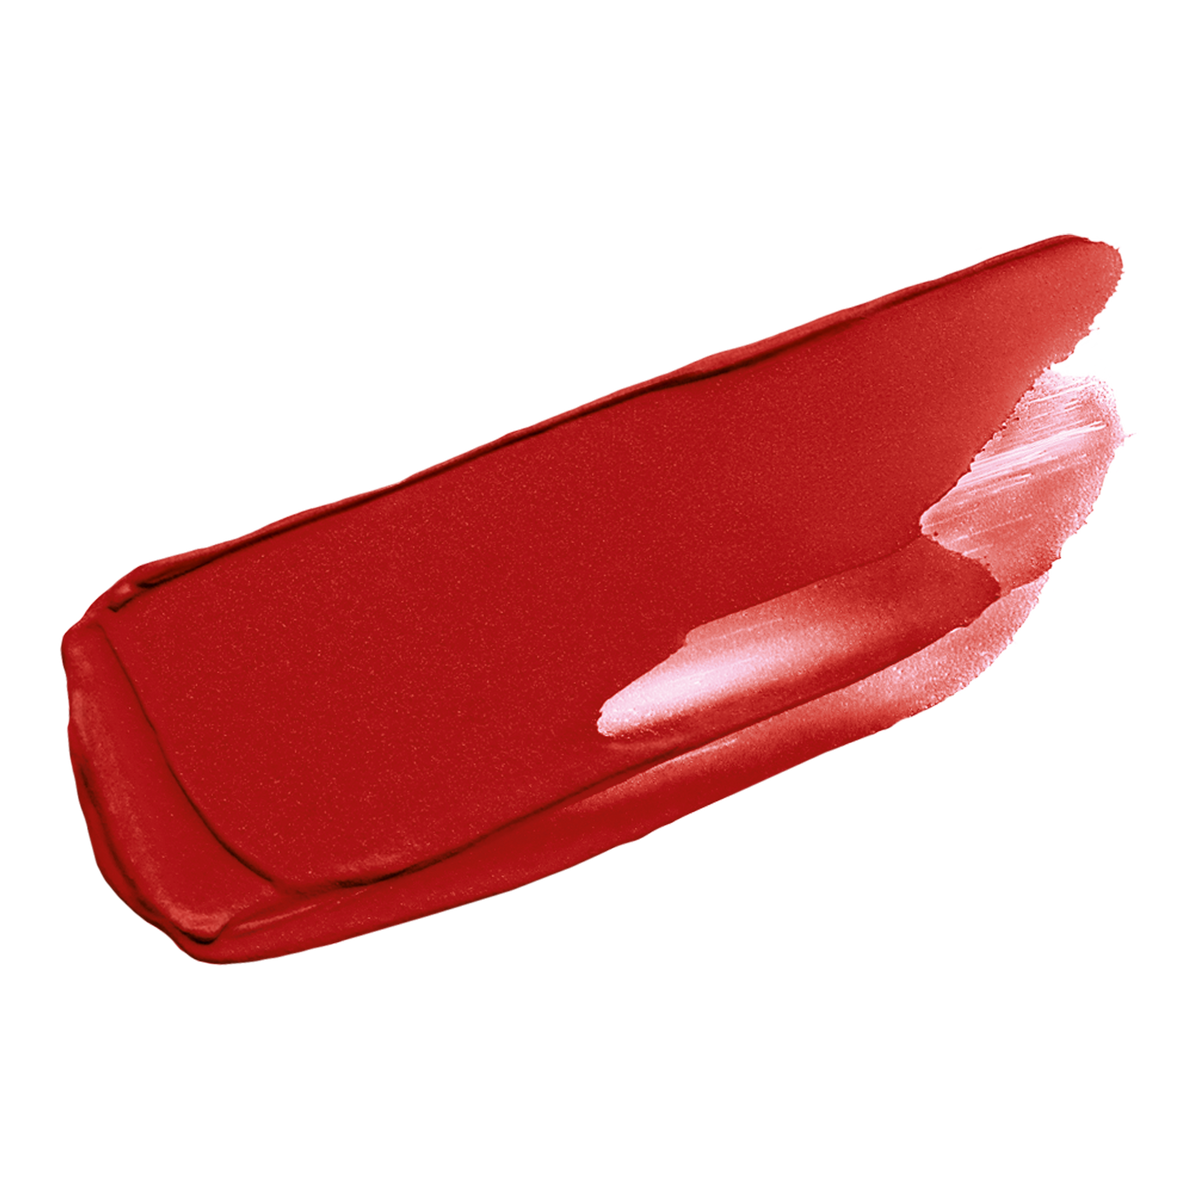 Le Rouge Deep Velvet Matte Lipstick Refill